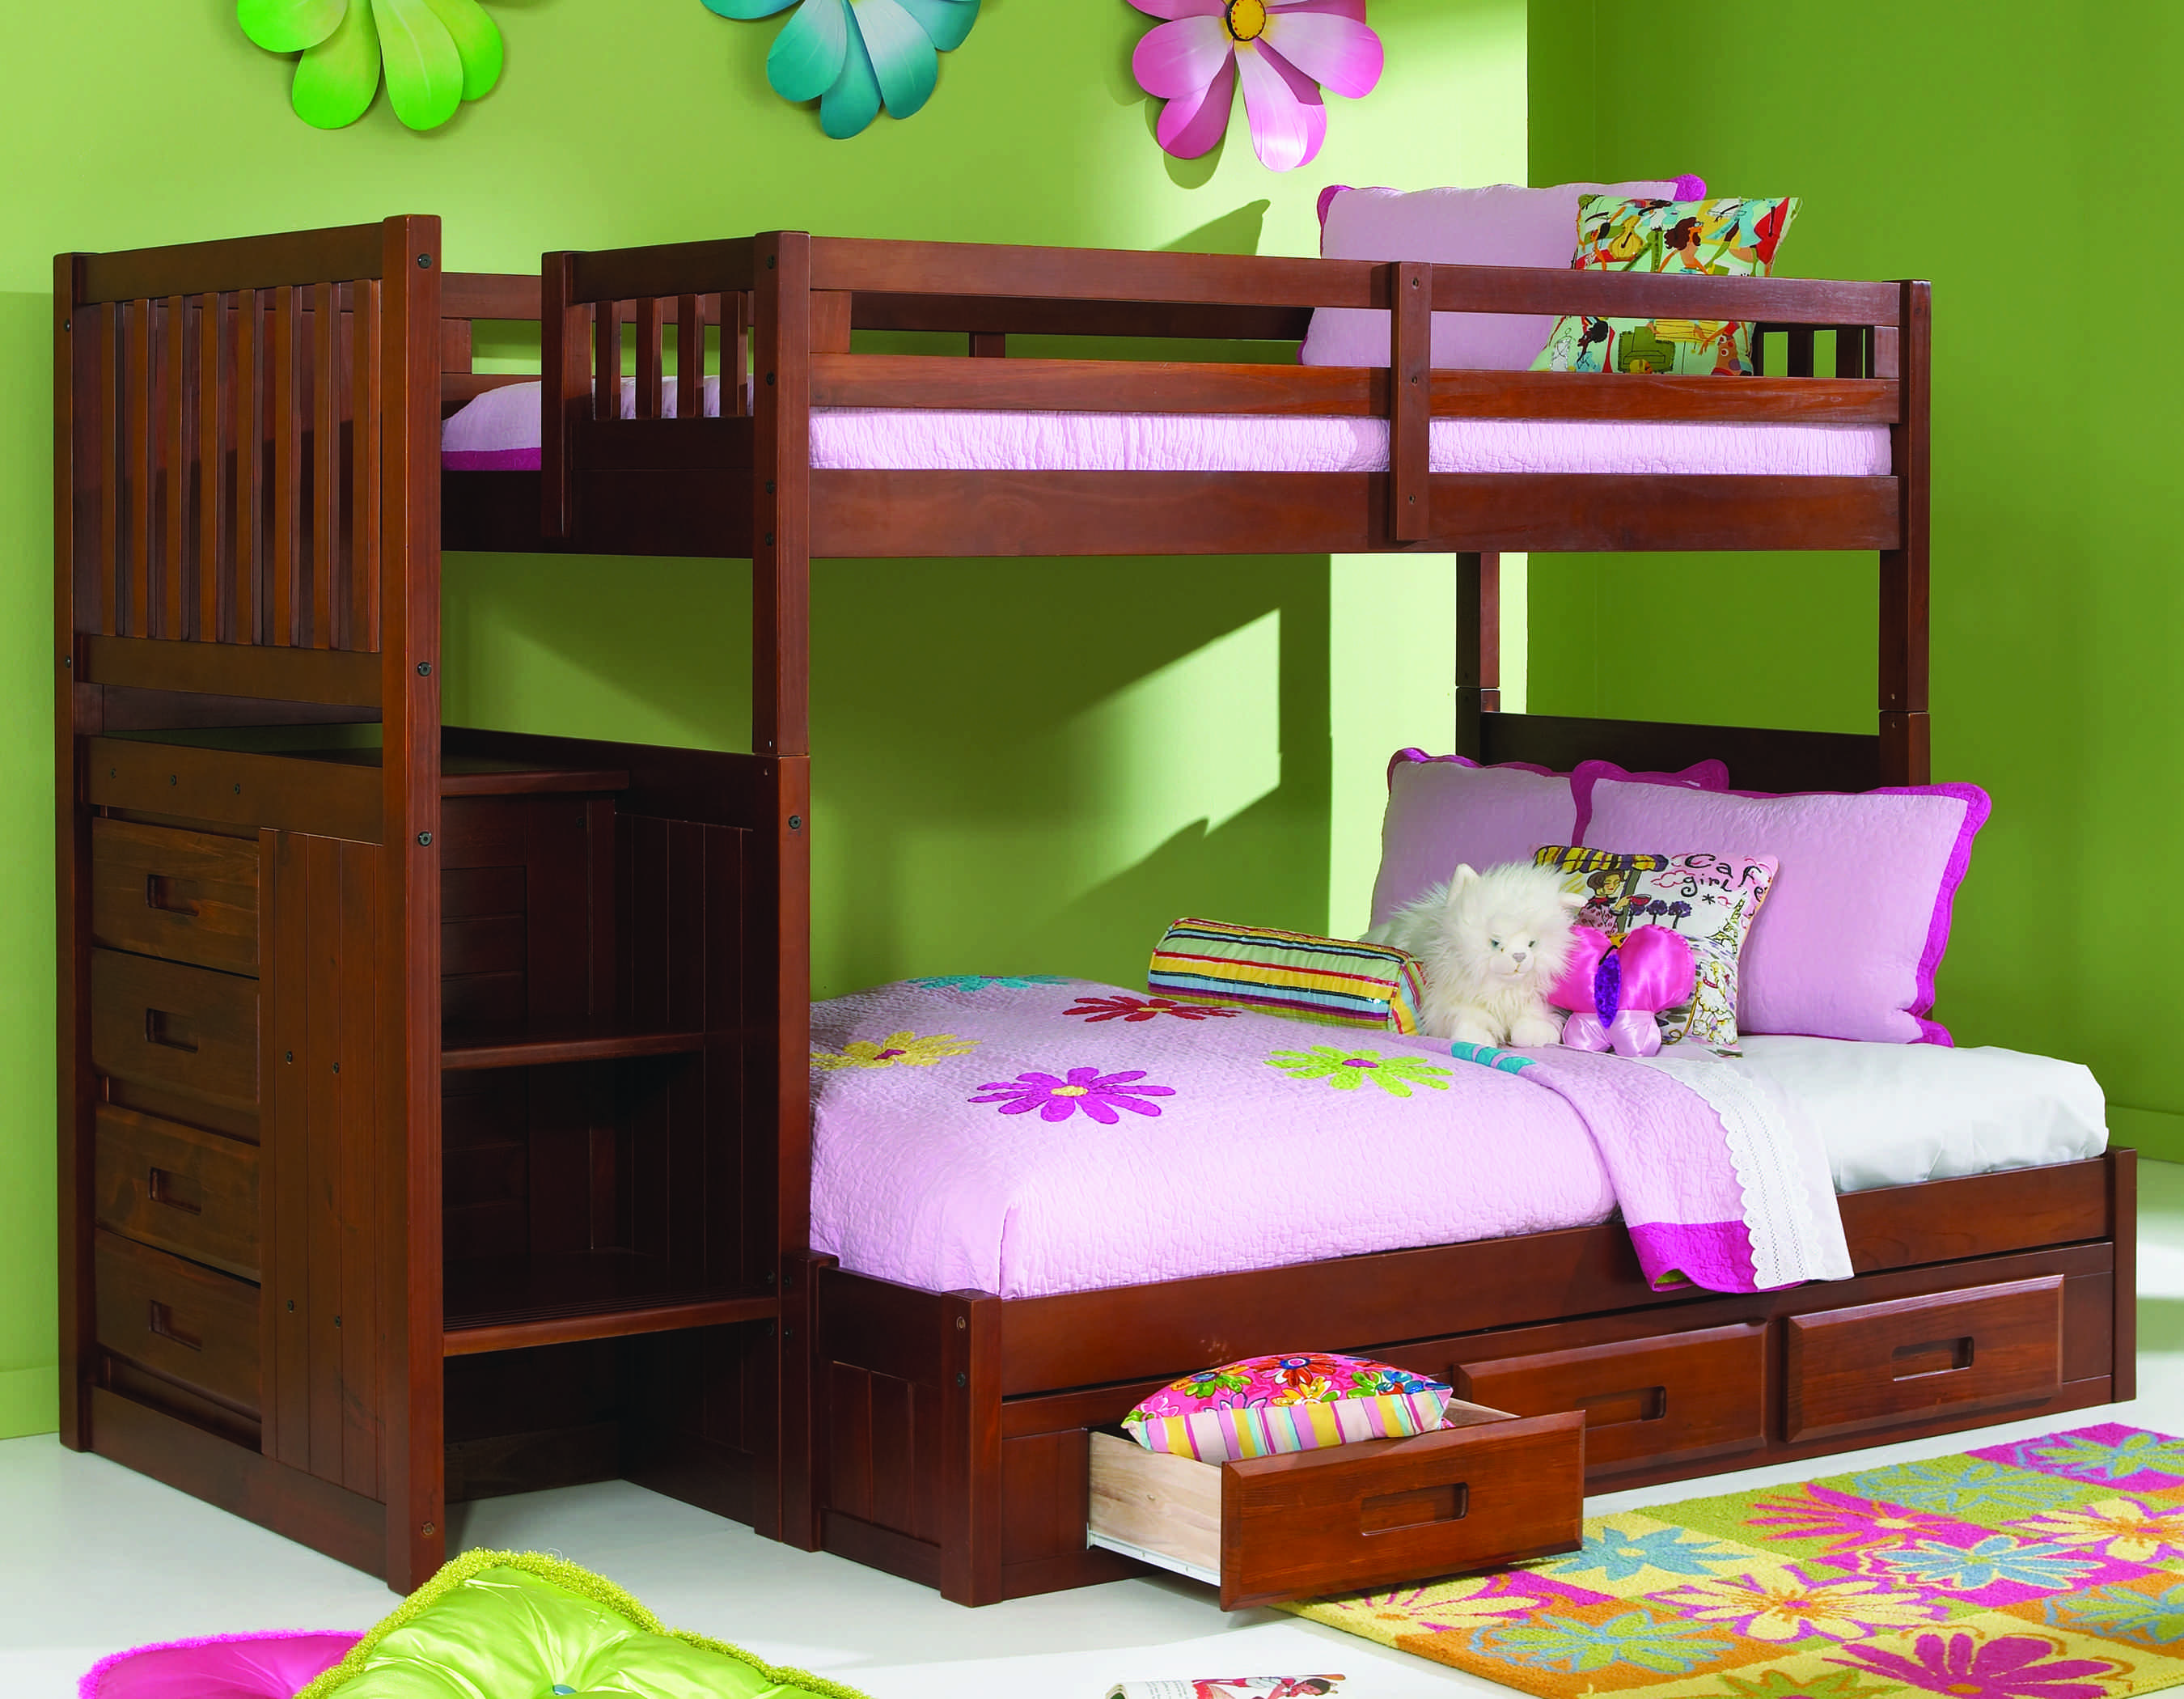 Bedroom Bunk Bed Furniture Sets Kfs, 4 Bed Bunk